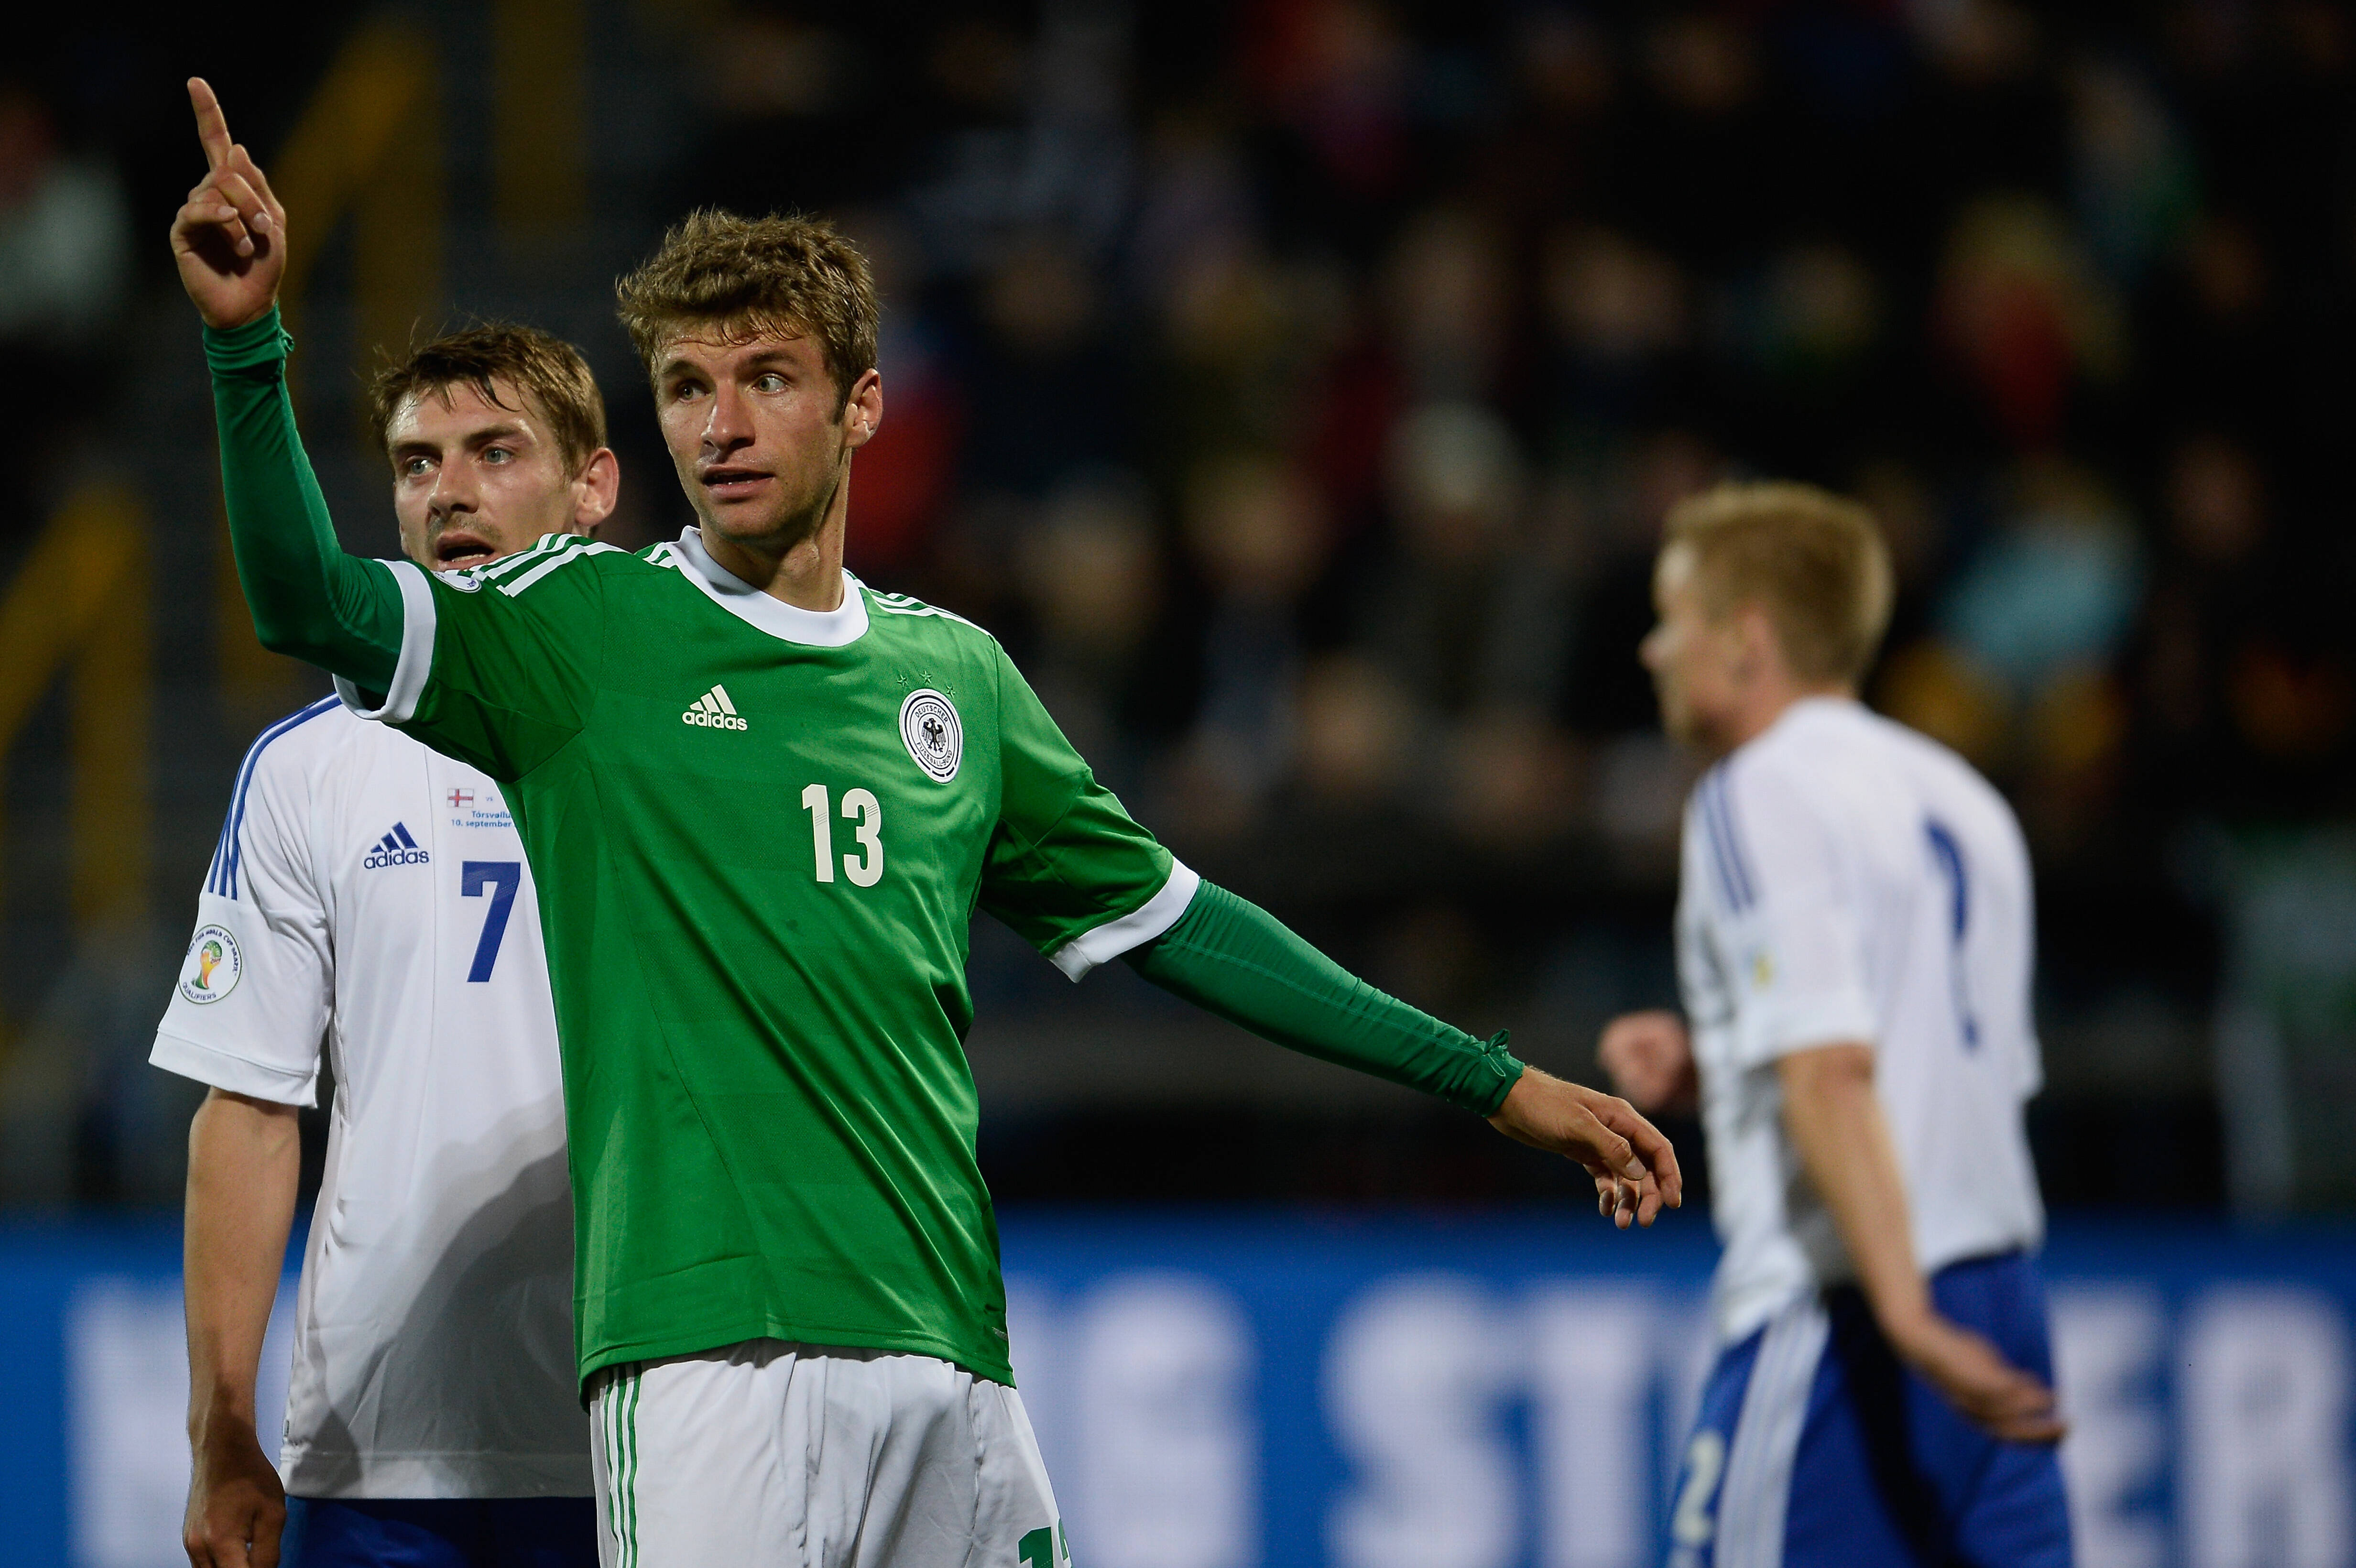 Thomas Müller em ação pela seleção alemã contra as Ilhas Faroe Getty Images